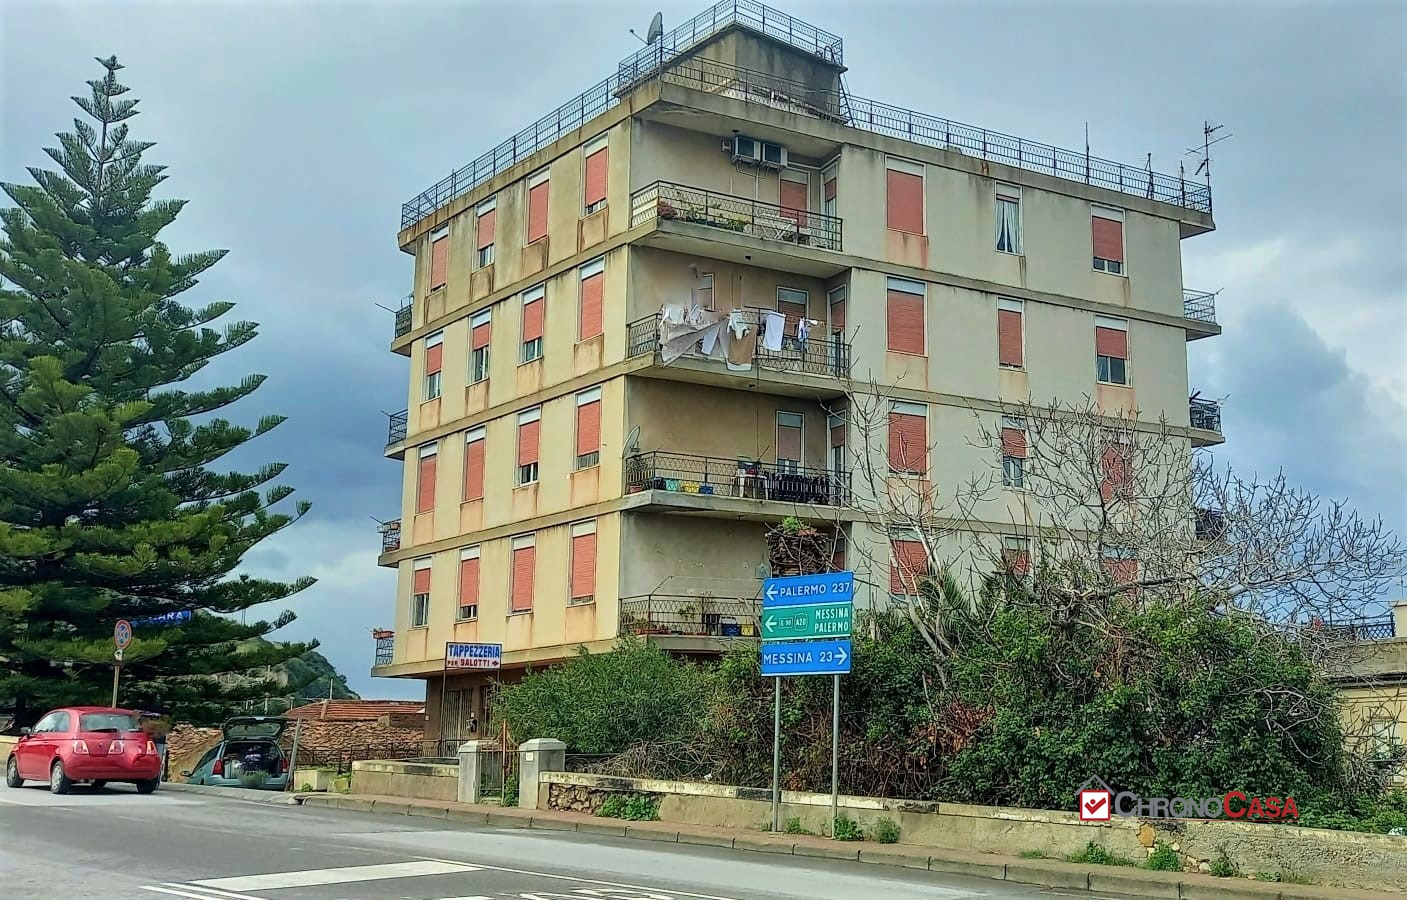 Appartamento in vendita a Saponara, 3 locali, prezzo € 57.500 | PortaleAgenzieImmobiliari.it